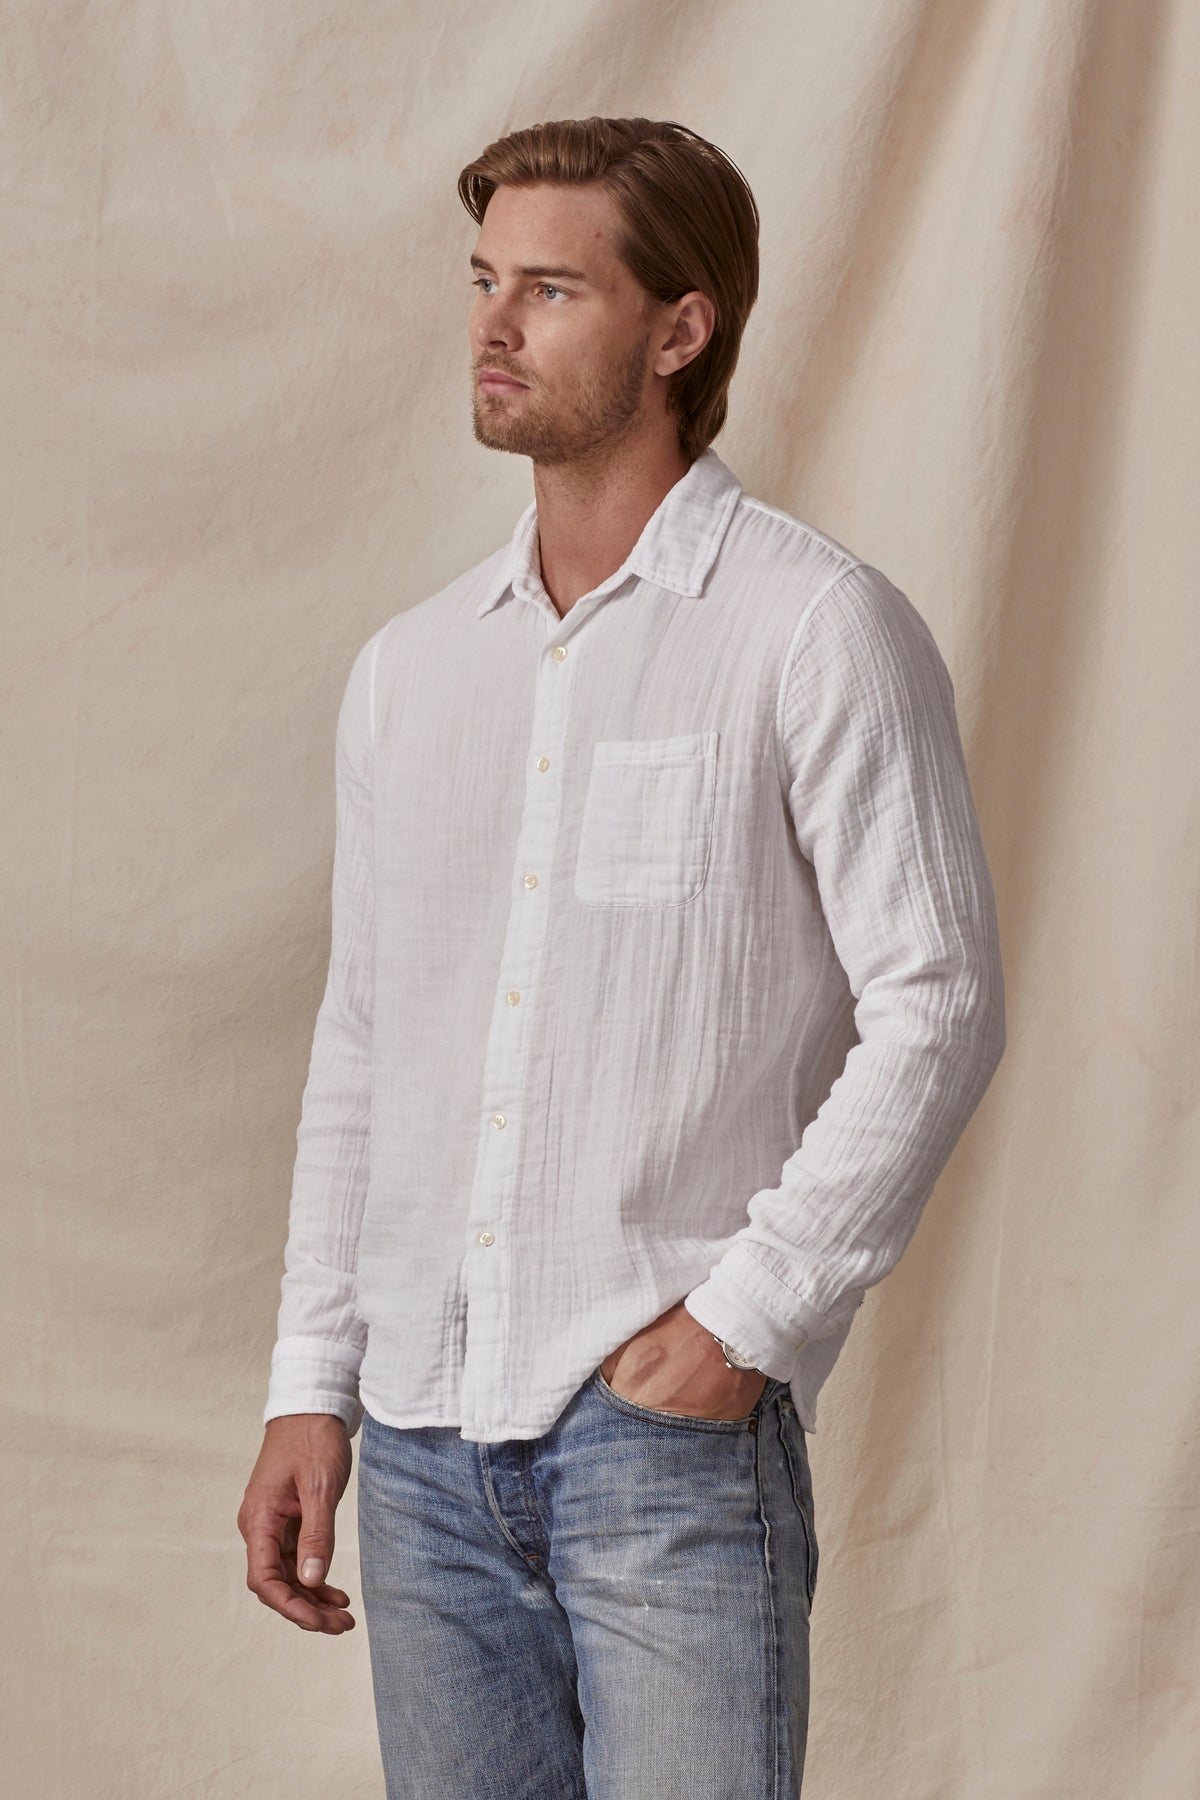 Velvet Men's Elton Cotton Woven Button-Down Shirt, XL / White